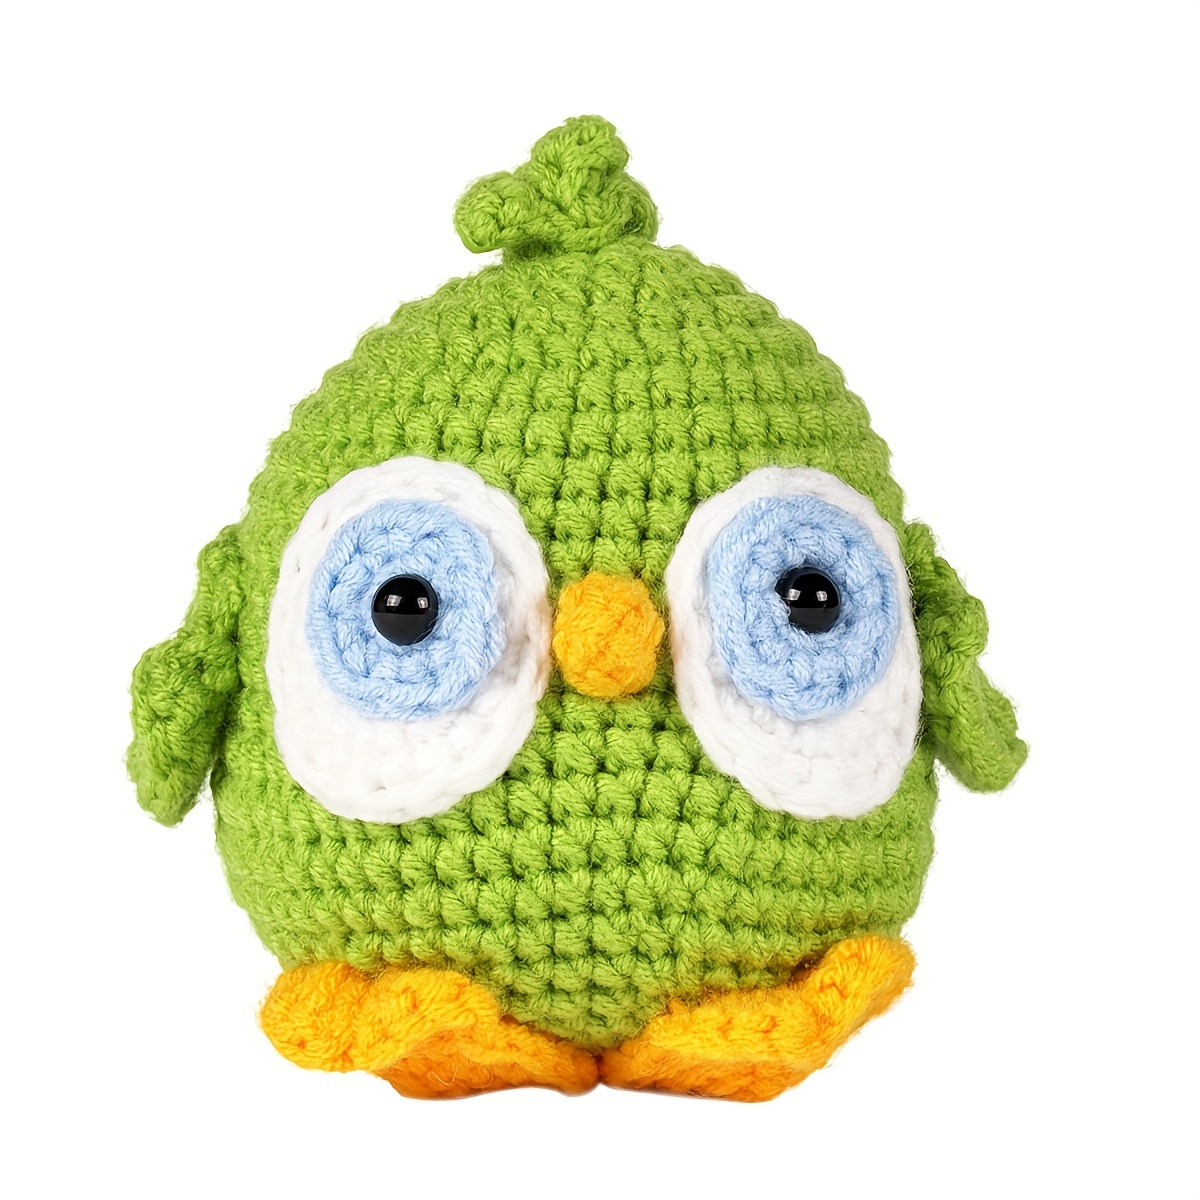 Moritakk Crochet Beginners Starter Kit - Beginner Crochet Kit, DIY Animal  Knitting Supplies with Step-by-Step Video Tutorials - Dinosaur.